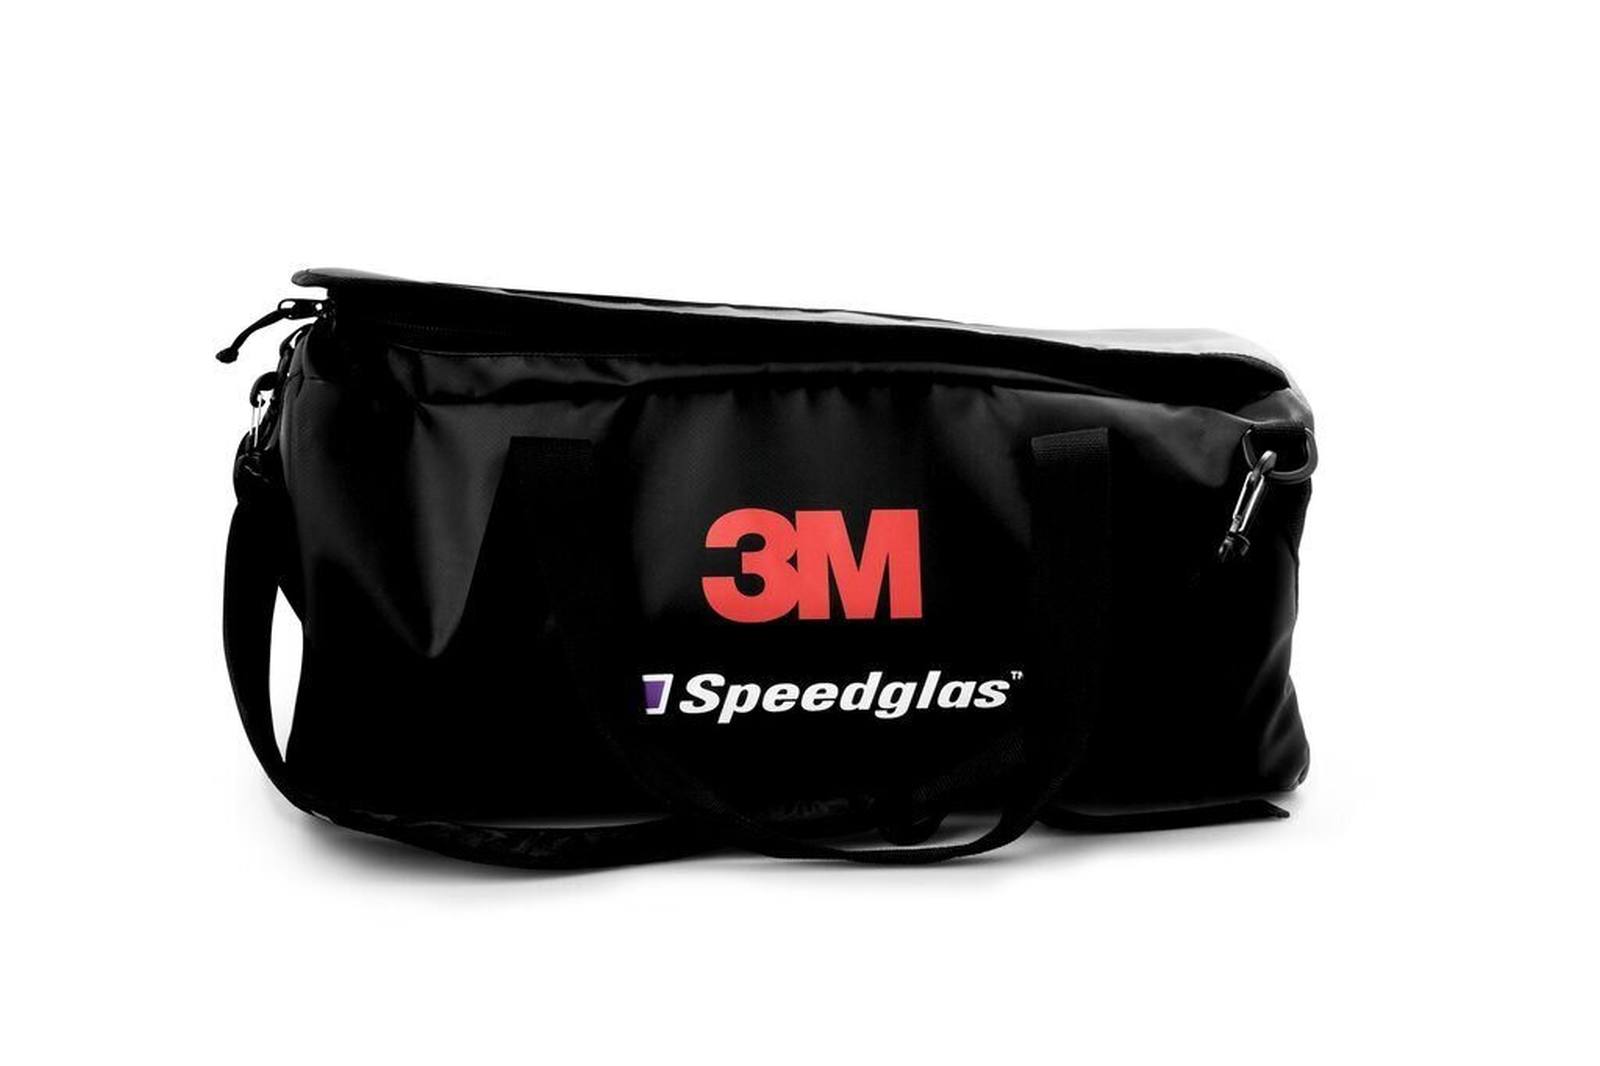 3M Speedglas storage bag Generation 5, H790105